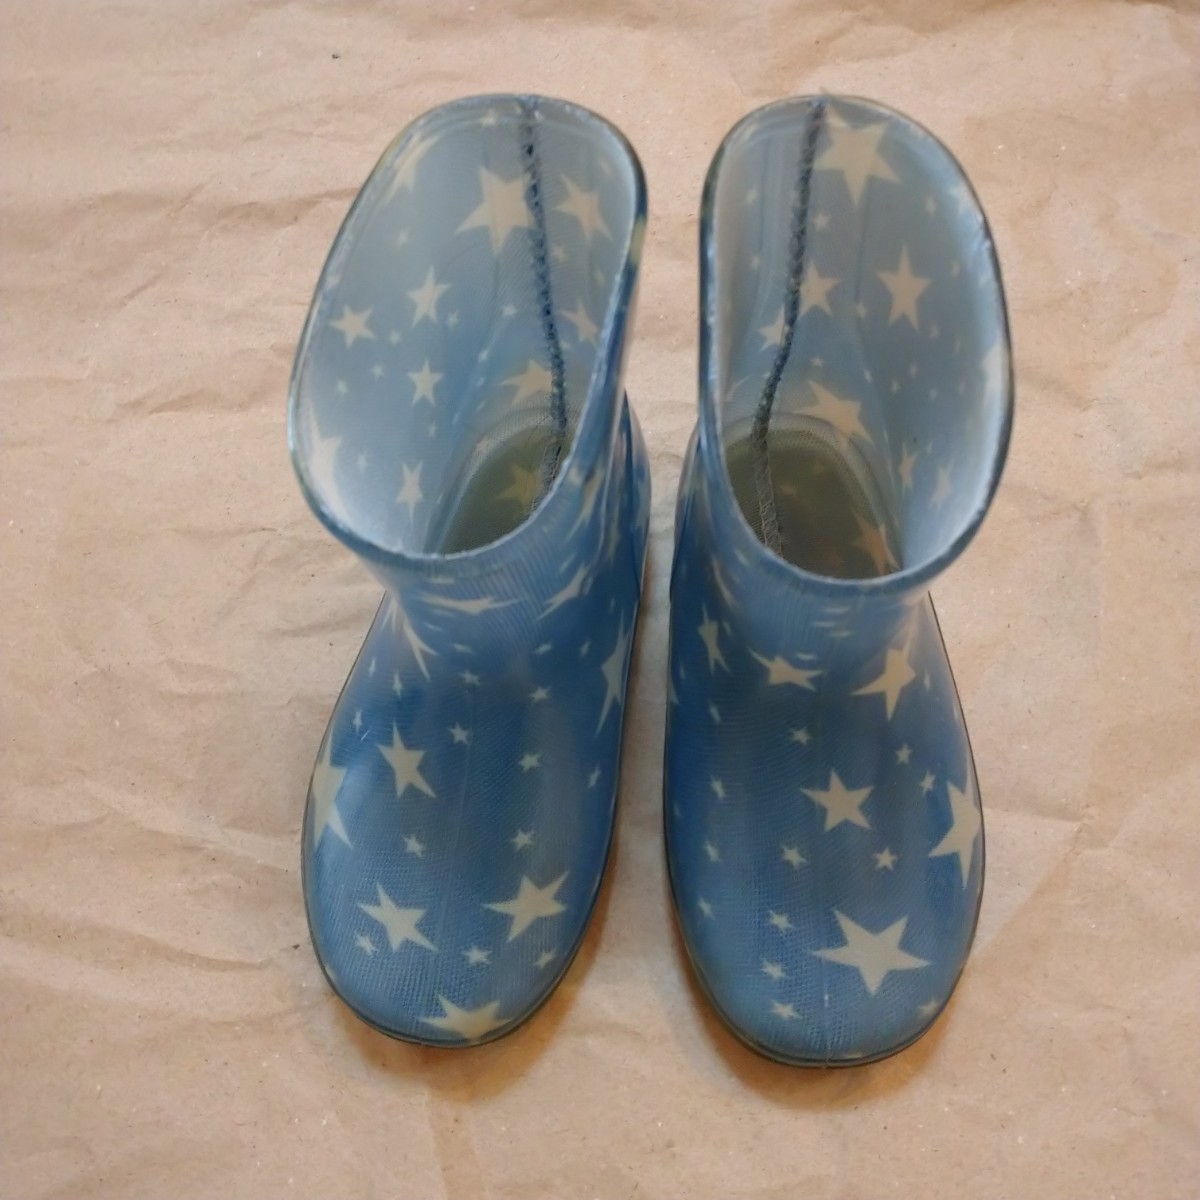 即決!ビニール長靴レインブーツ14.0cmブルー青地白ホワイト星柄